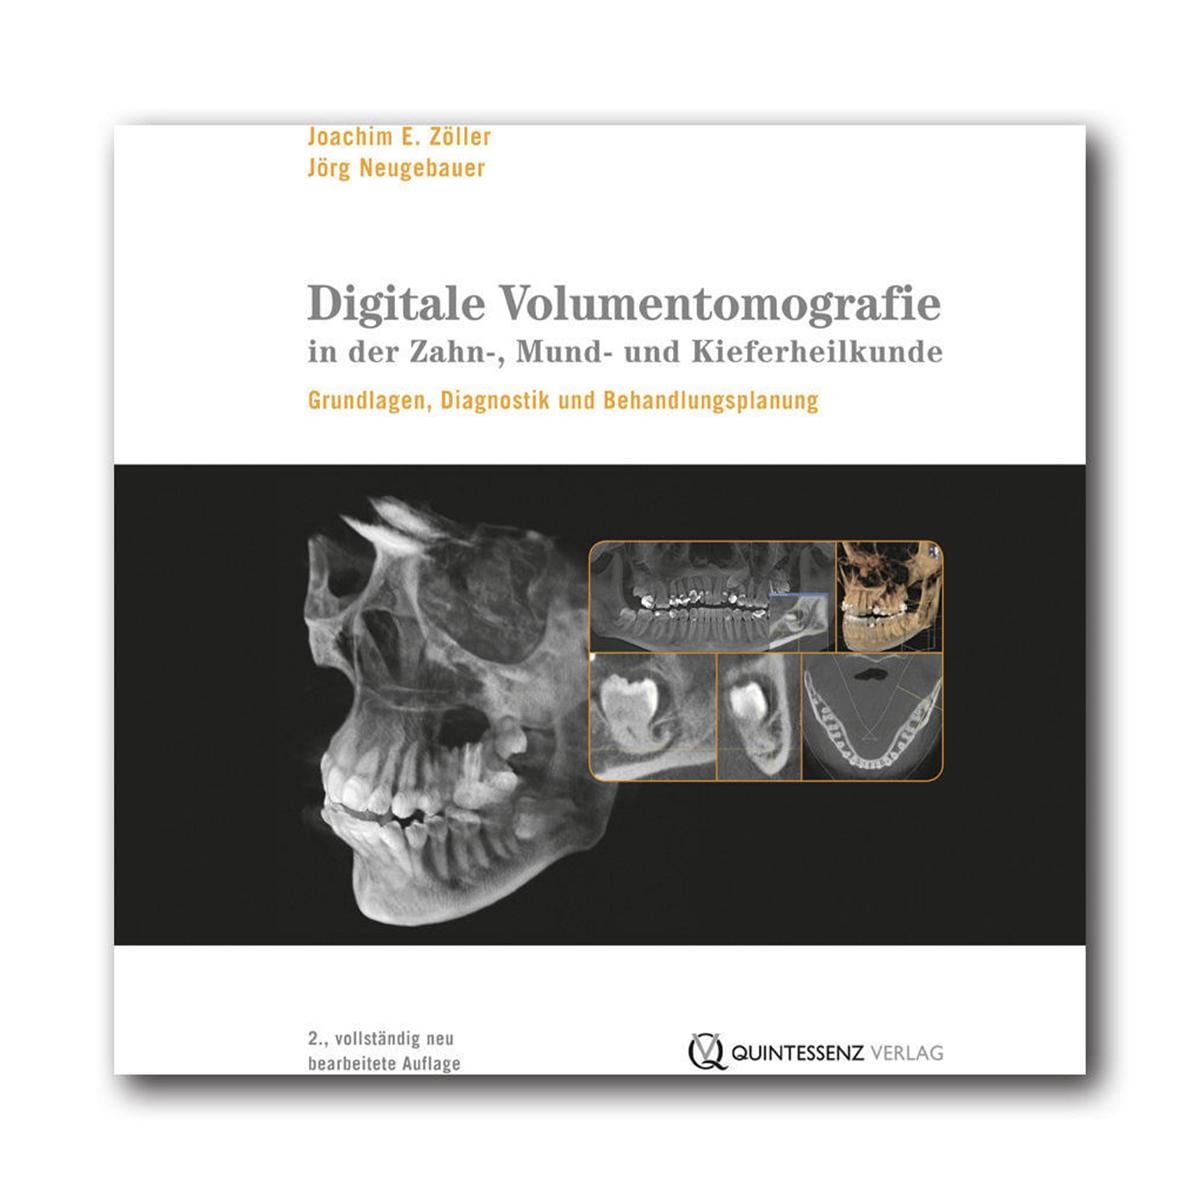 Digitale Volumentomografie in der Zahn-, Mund- und Kieferheilkunde - Buch